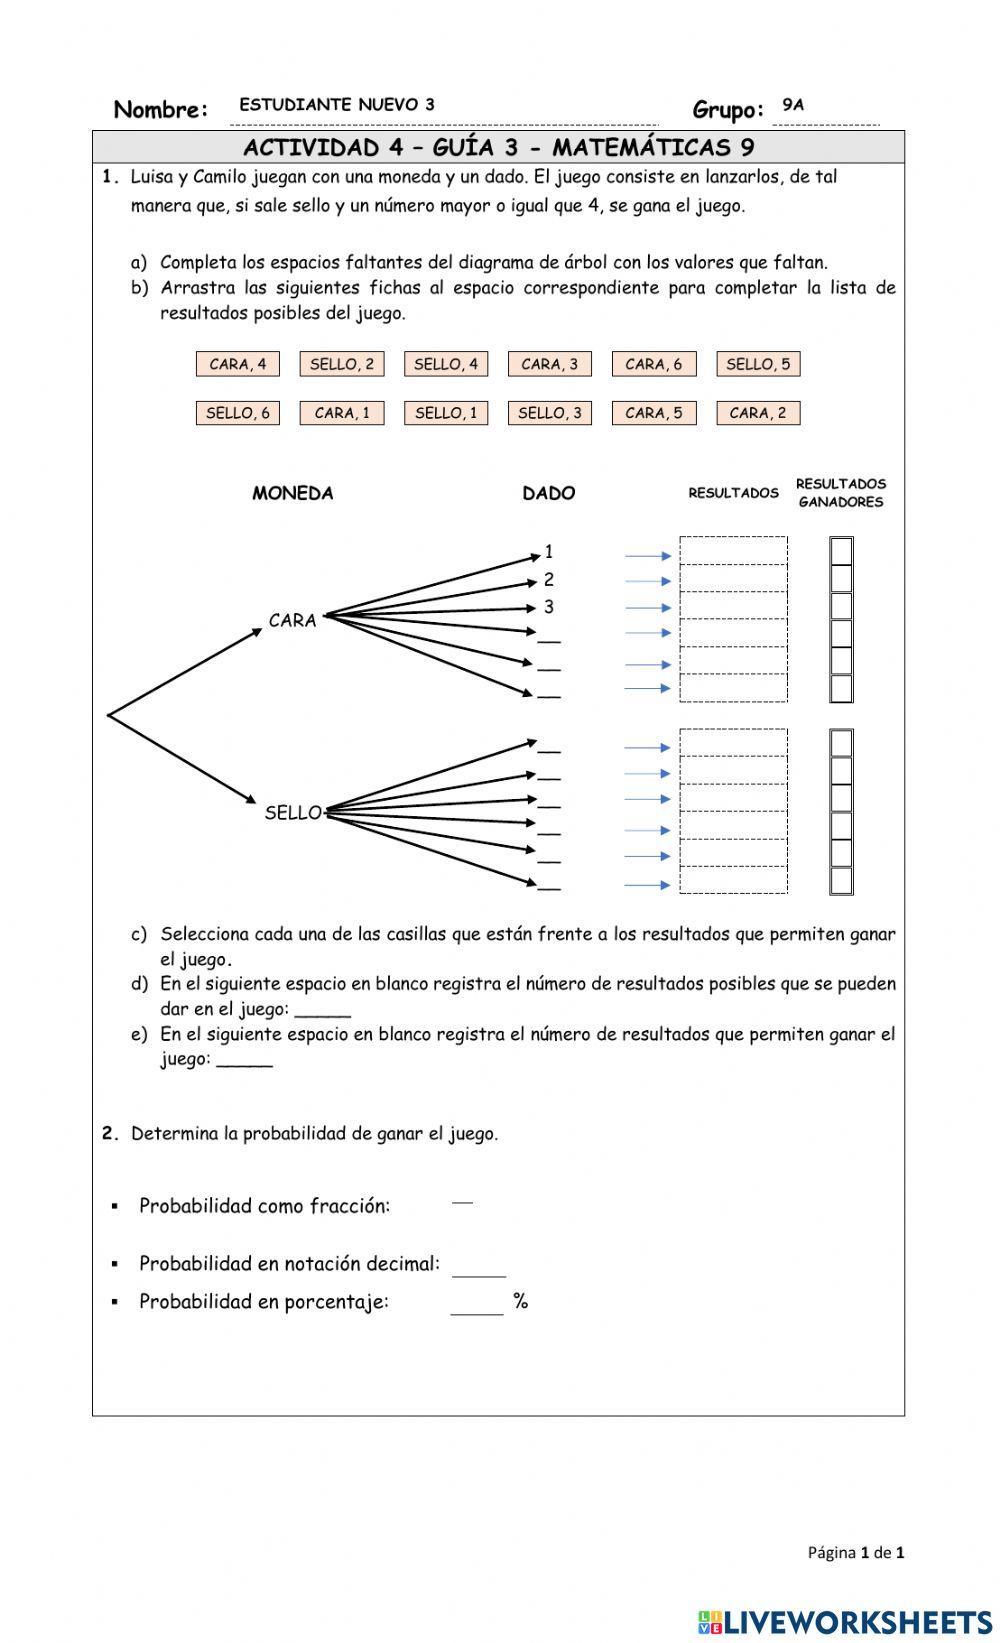 Técnicas para el cálculo de la probabilidad: diagrama de árbol